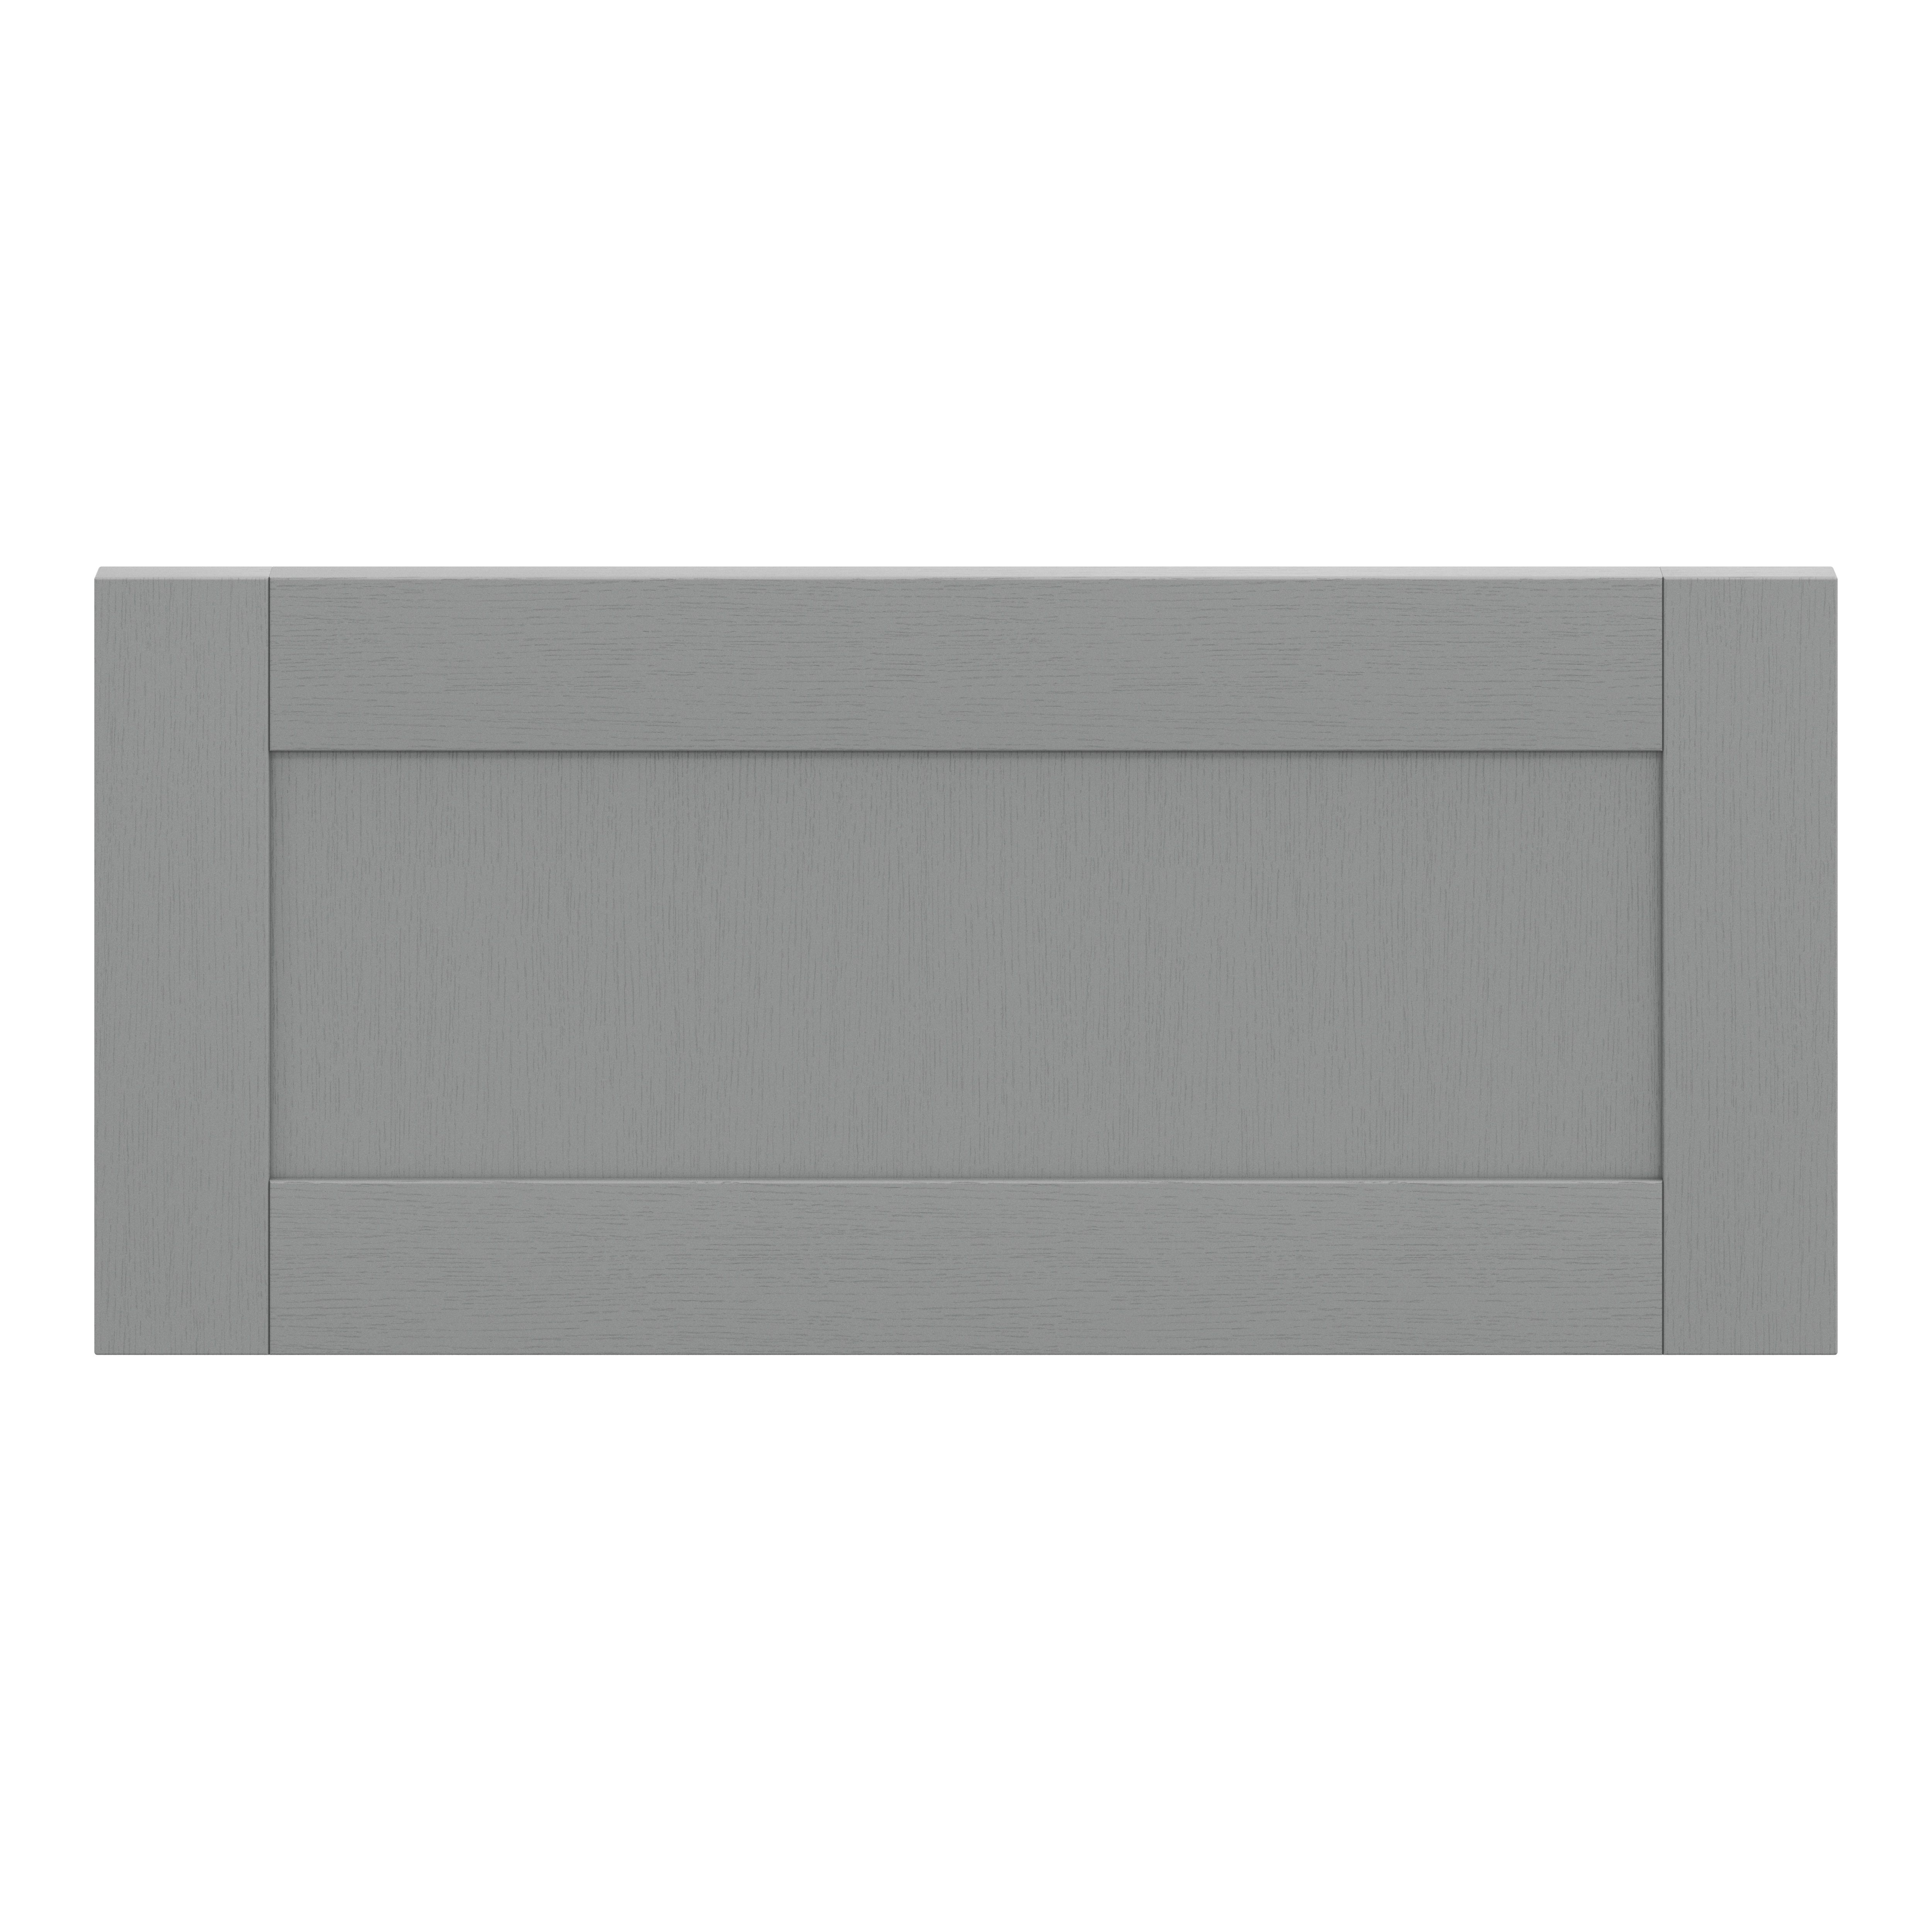 GoodHome Alpinia Matt slate grey wood effect Drawer front, bridging door & bi fold door, (W)800mm (H)356mm (T)18mm